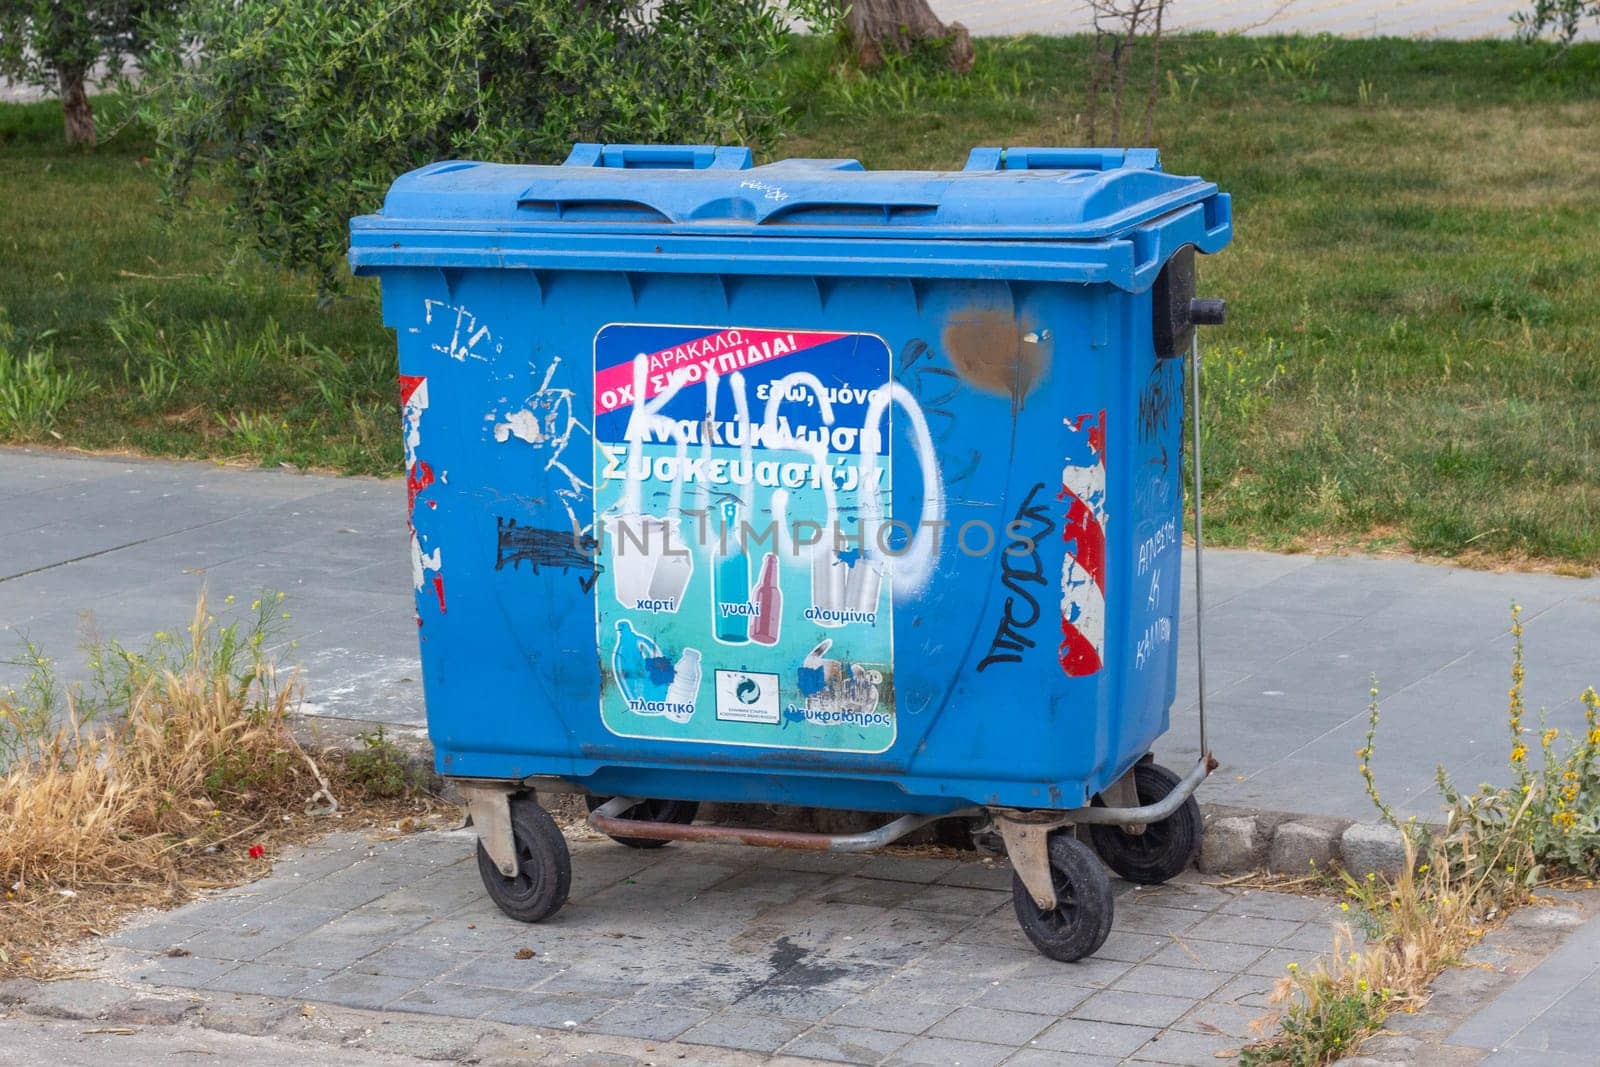 Blue Trash Bin: Urban Waste Management Solution by DakotaBOldeman